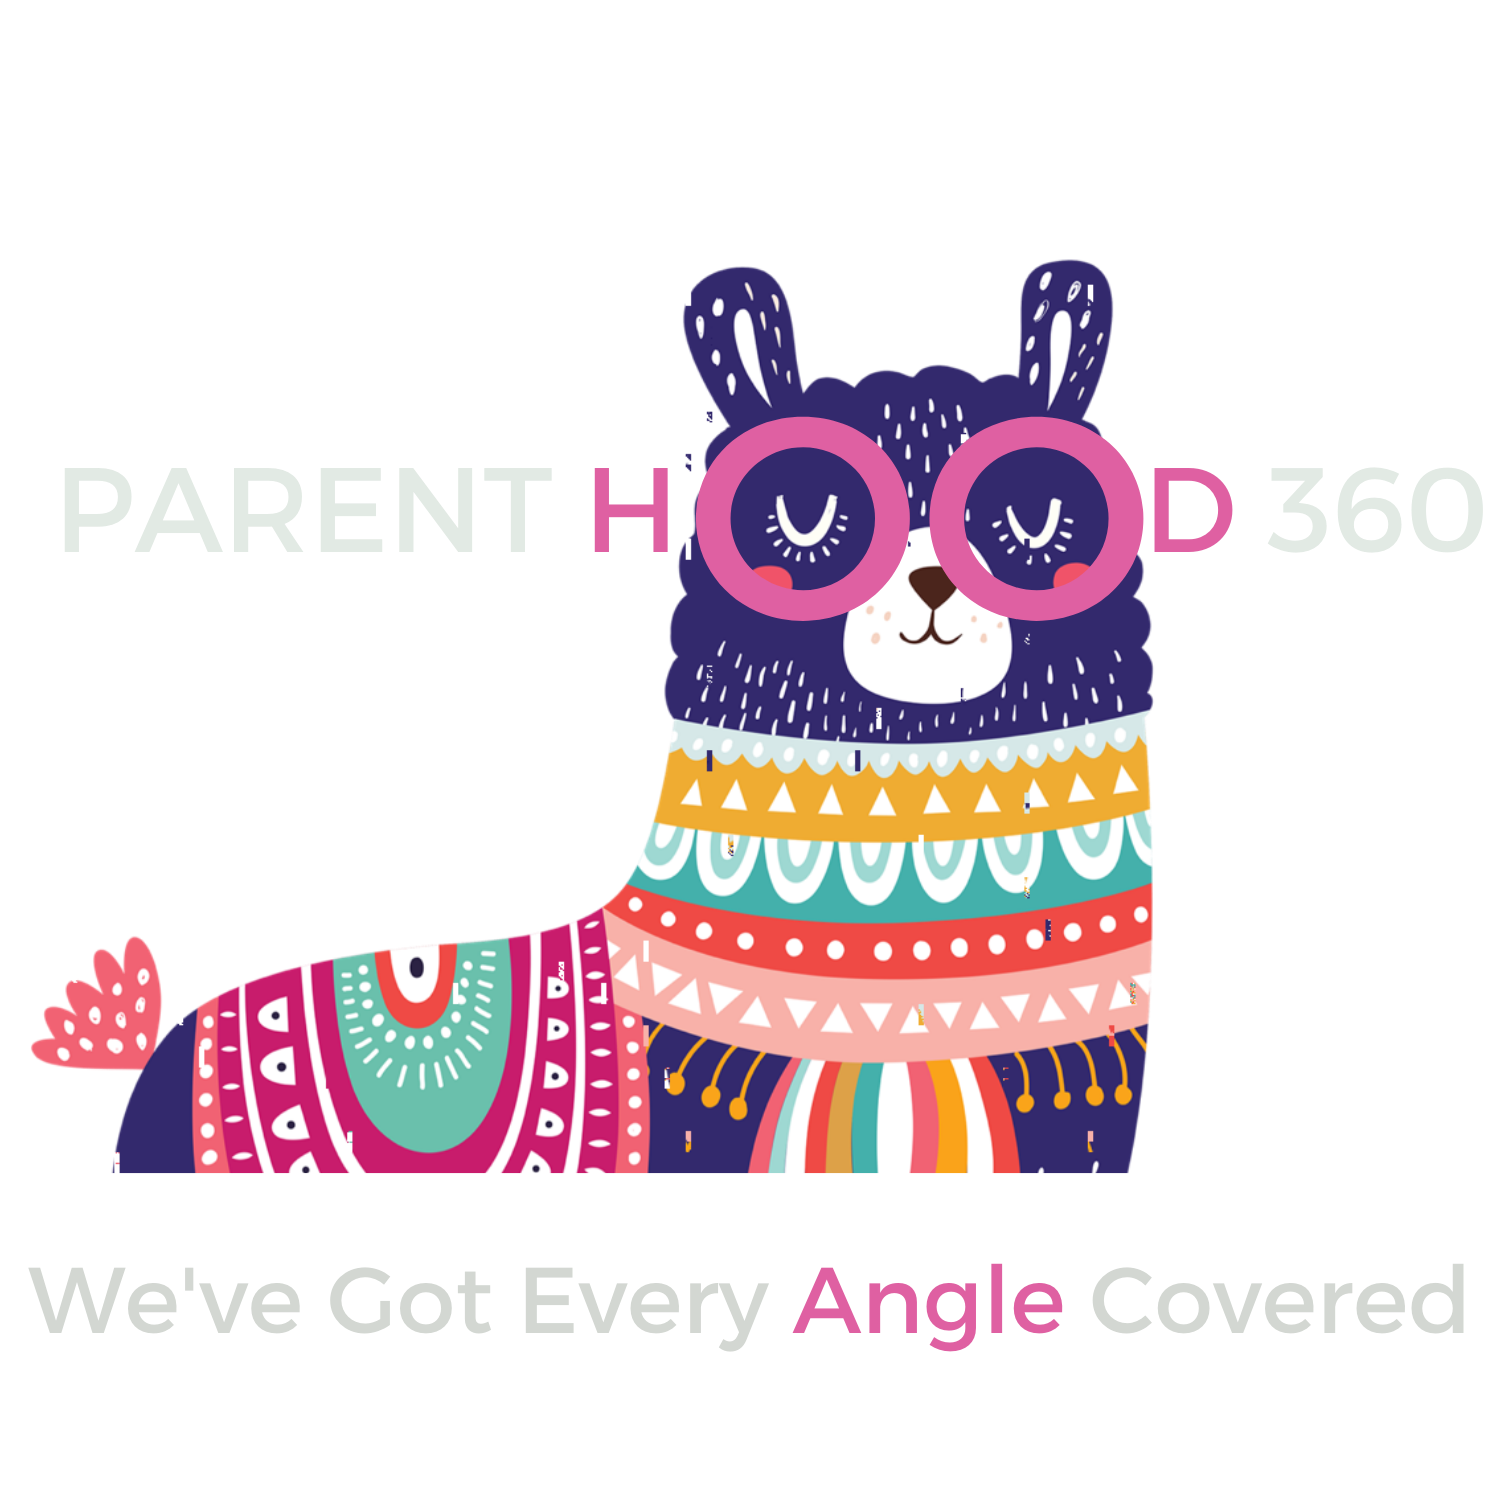 ParentHood360